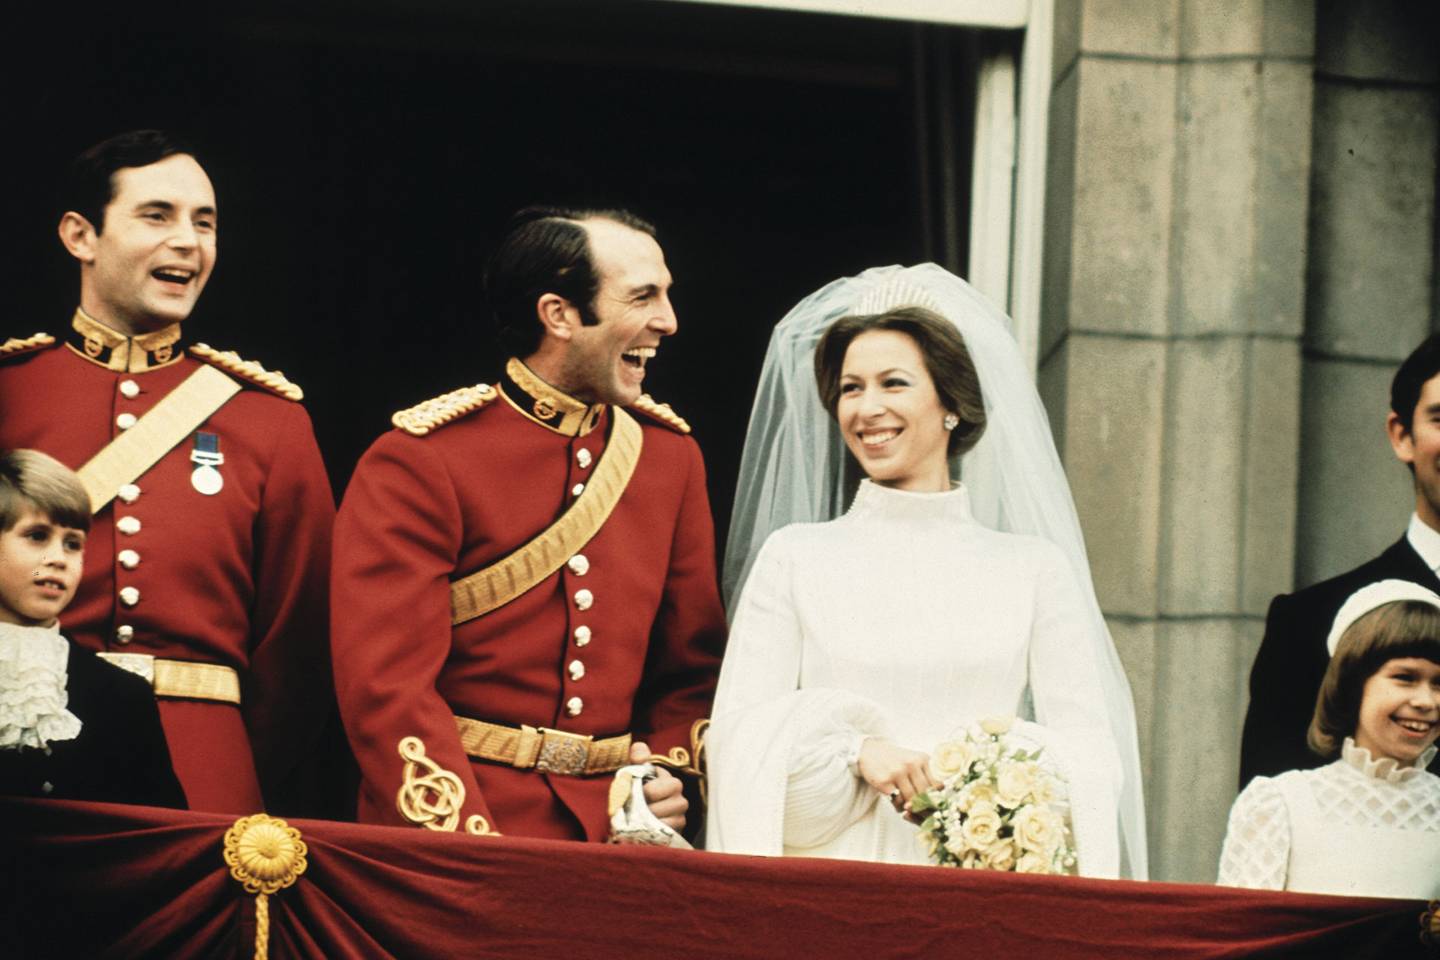 Queen Mary Fringe Tiara - Queen Elizabeth II wedding day tiara | Tatler